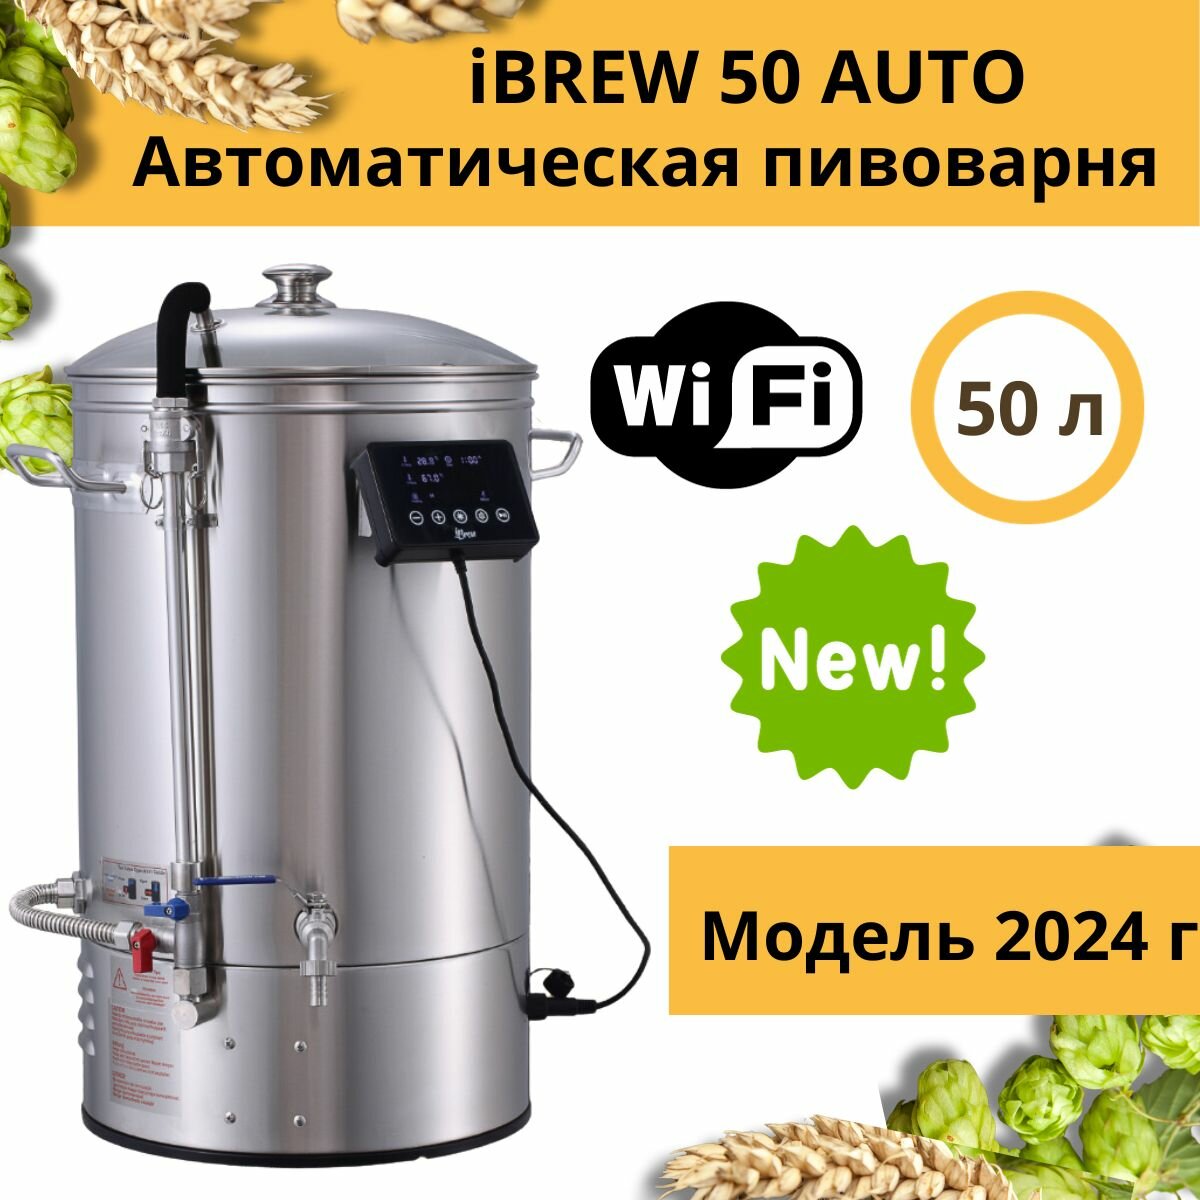 Автоматическая домашняя пивоварня сусловарня iBrew 50 Auto без чиллера, модель 2024 года с WIFI